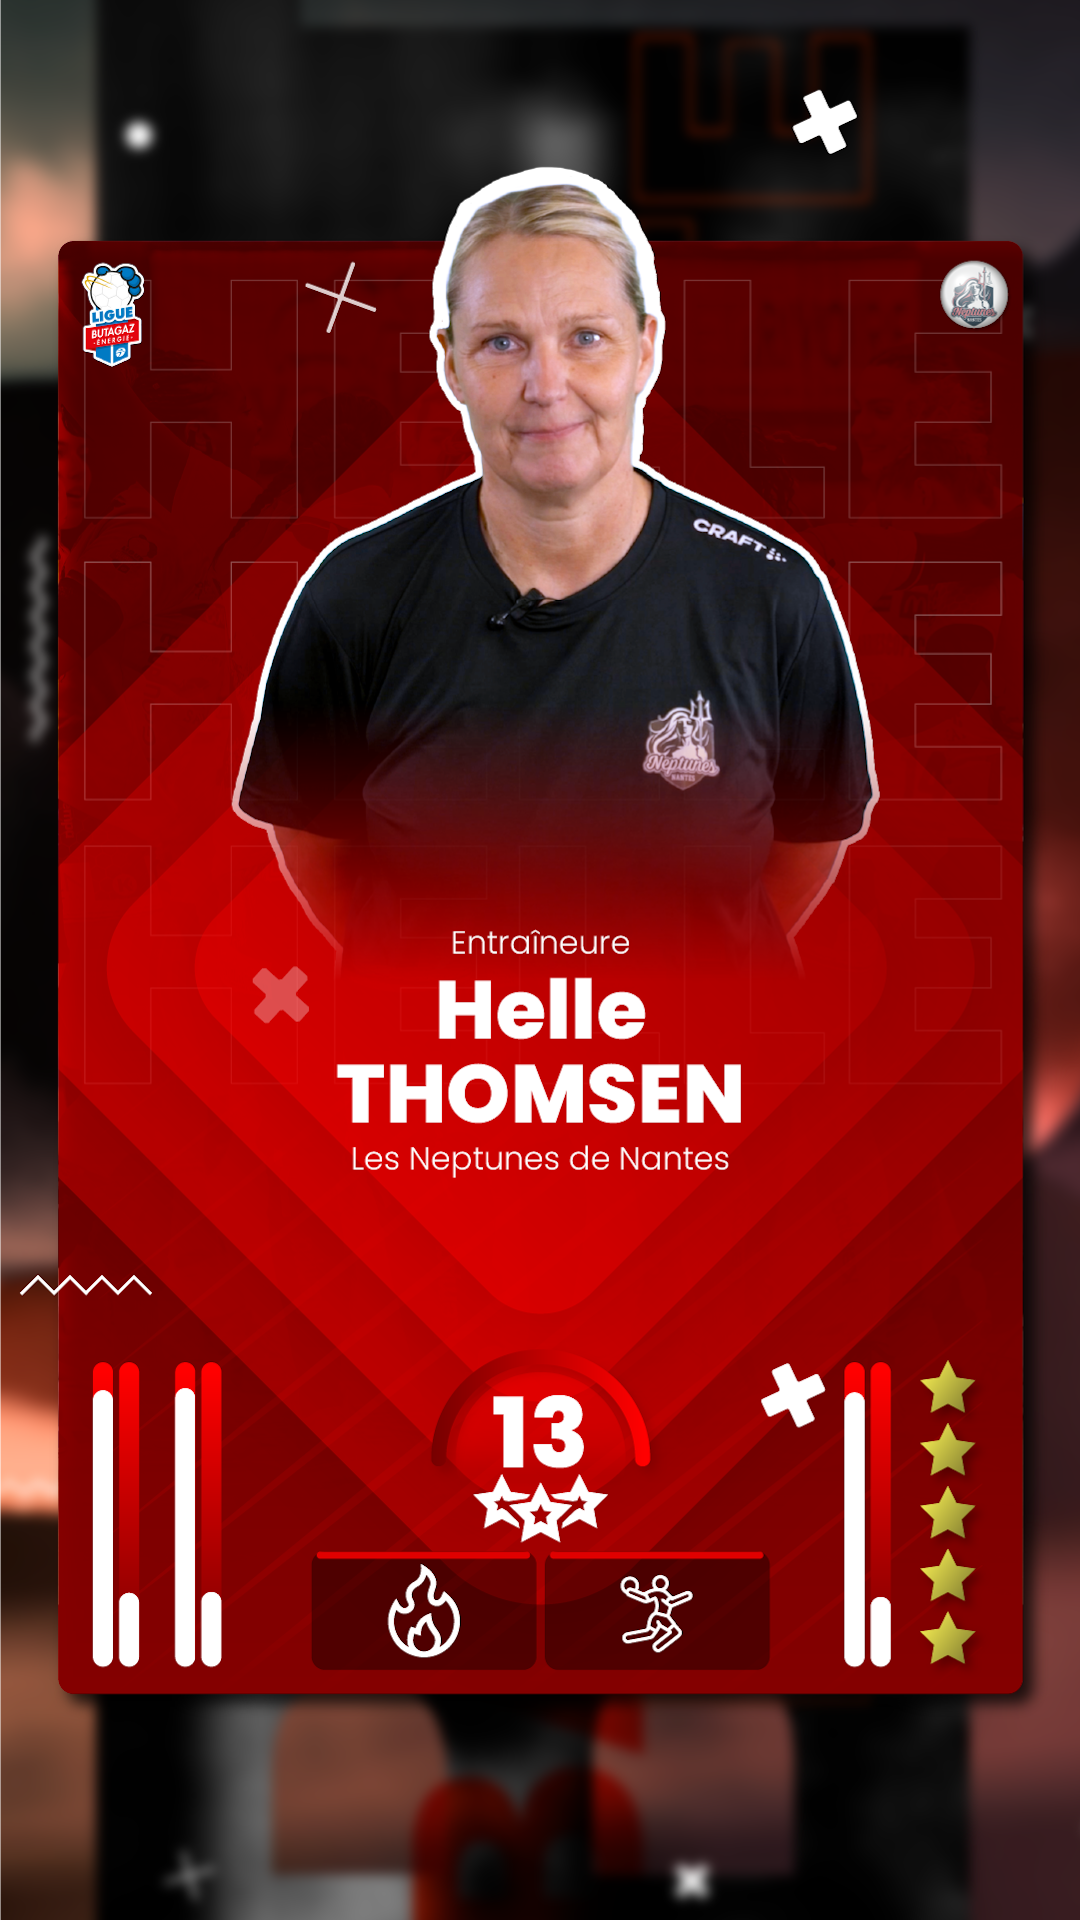 Helle Thomsen, entraineure des Neptunes de nantes